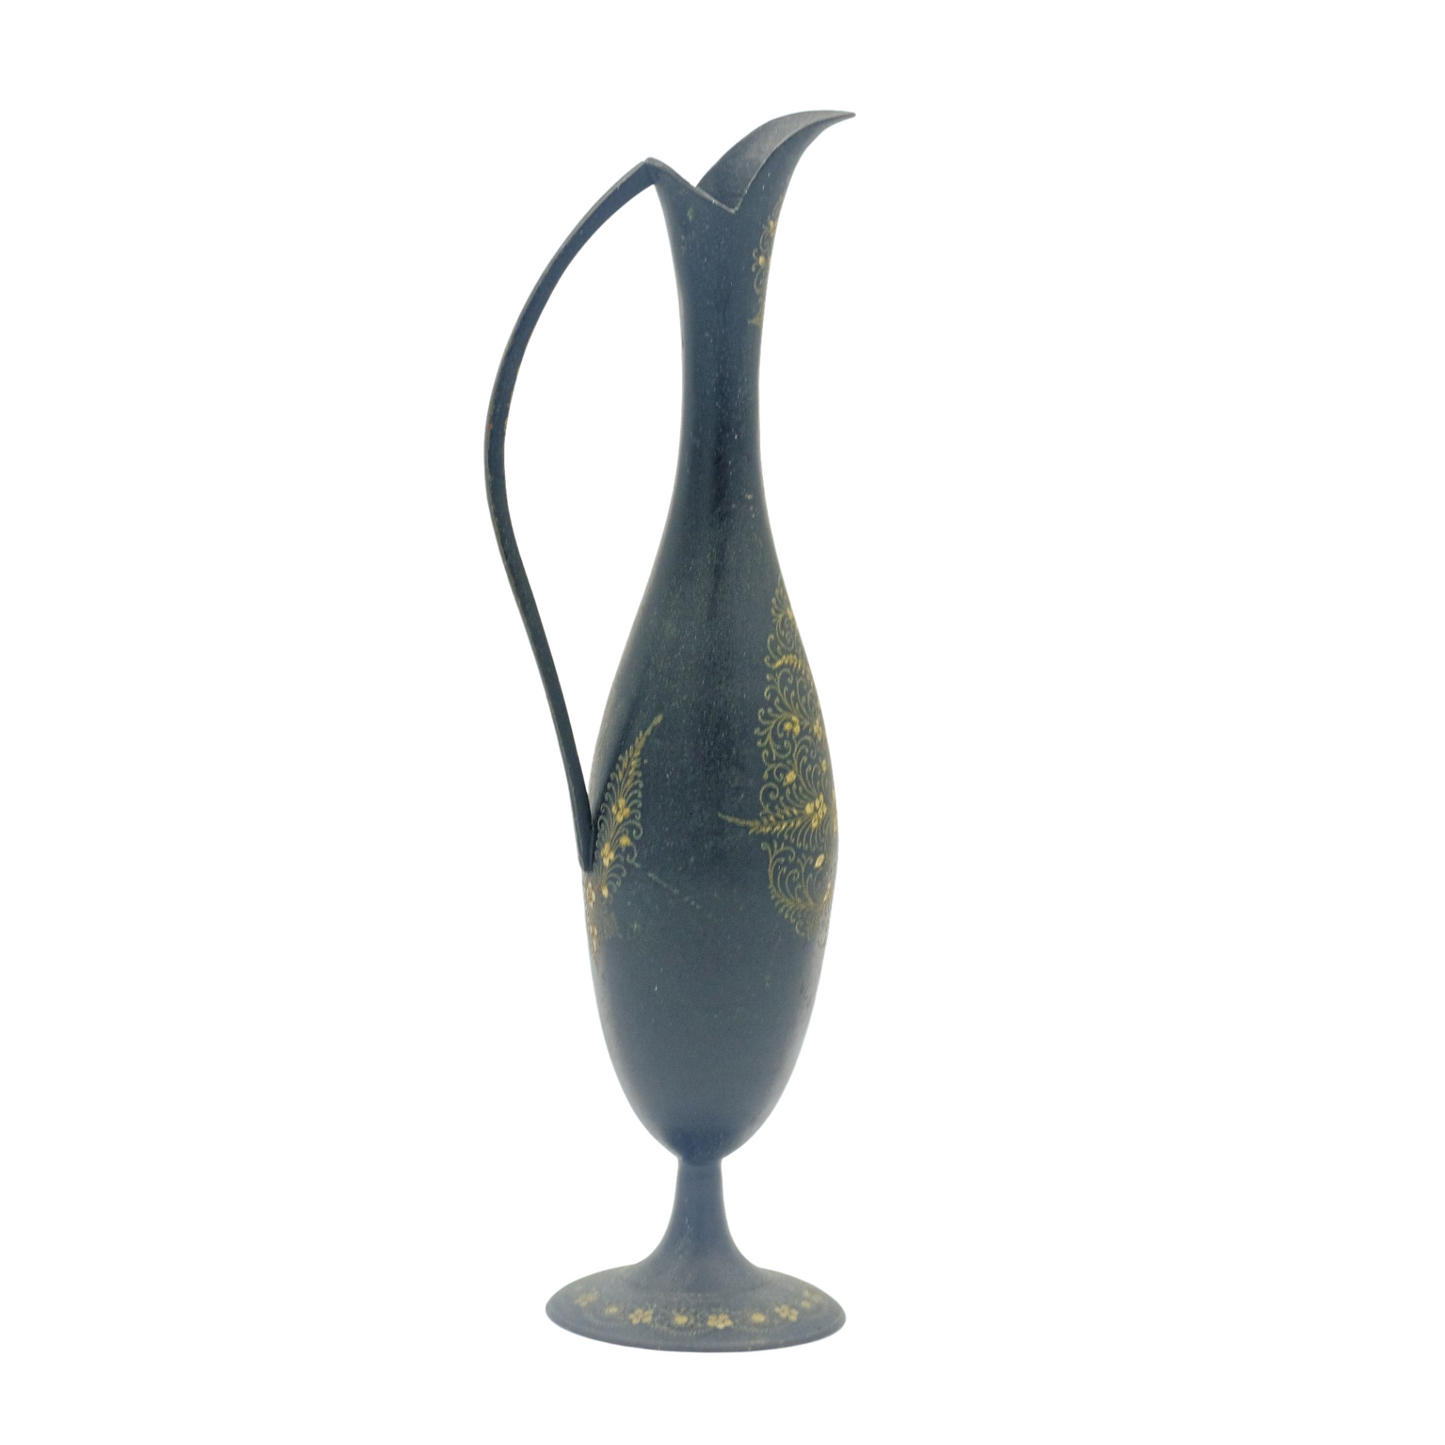 Vintage Black Etched Brass Vase with Handle